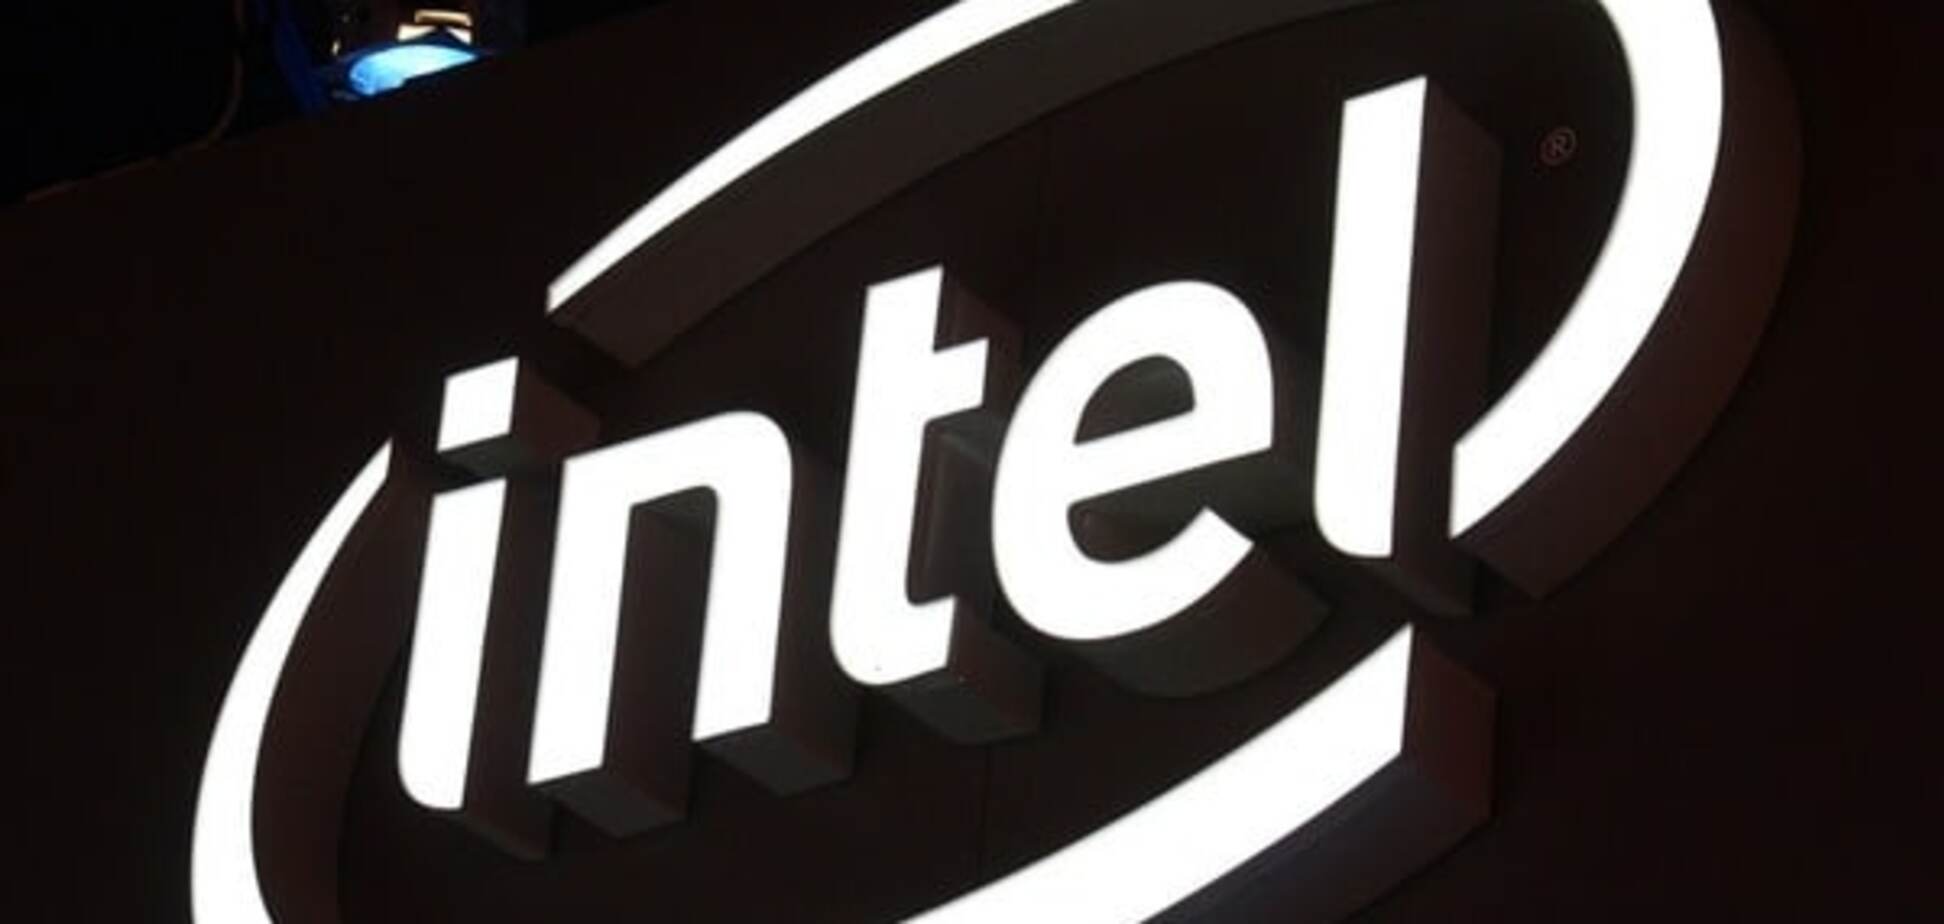 Більше монополії: Intel поглинула конкурента за $17 млрд